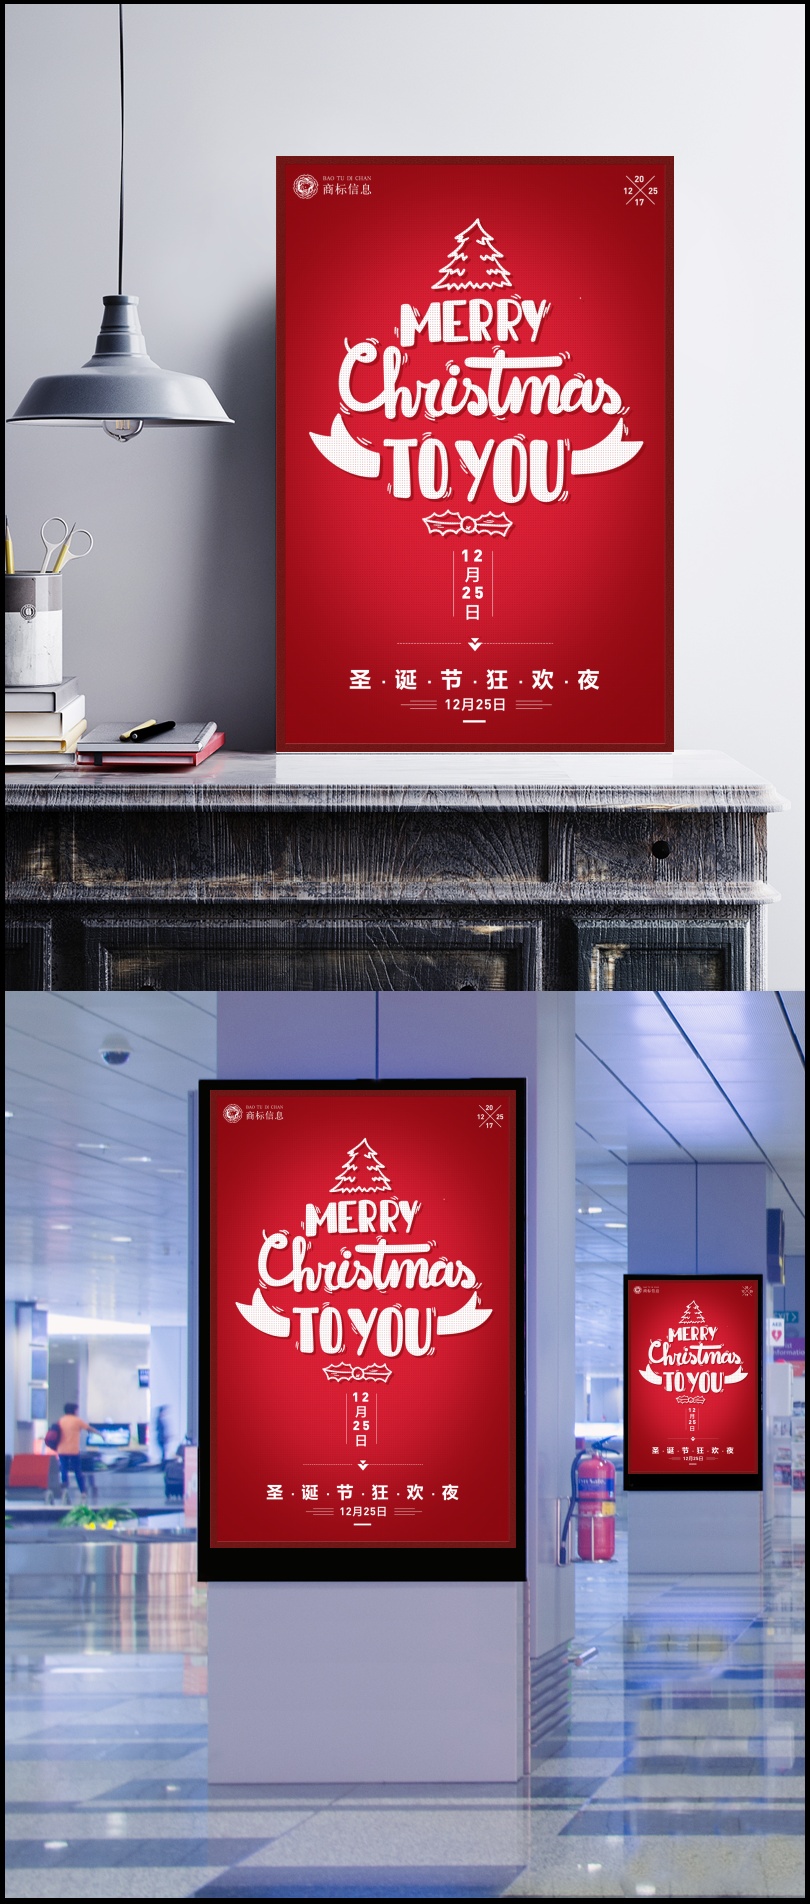 红色简约圣诞节海报设计